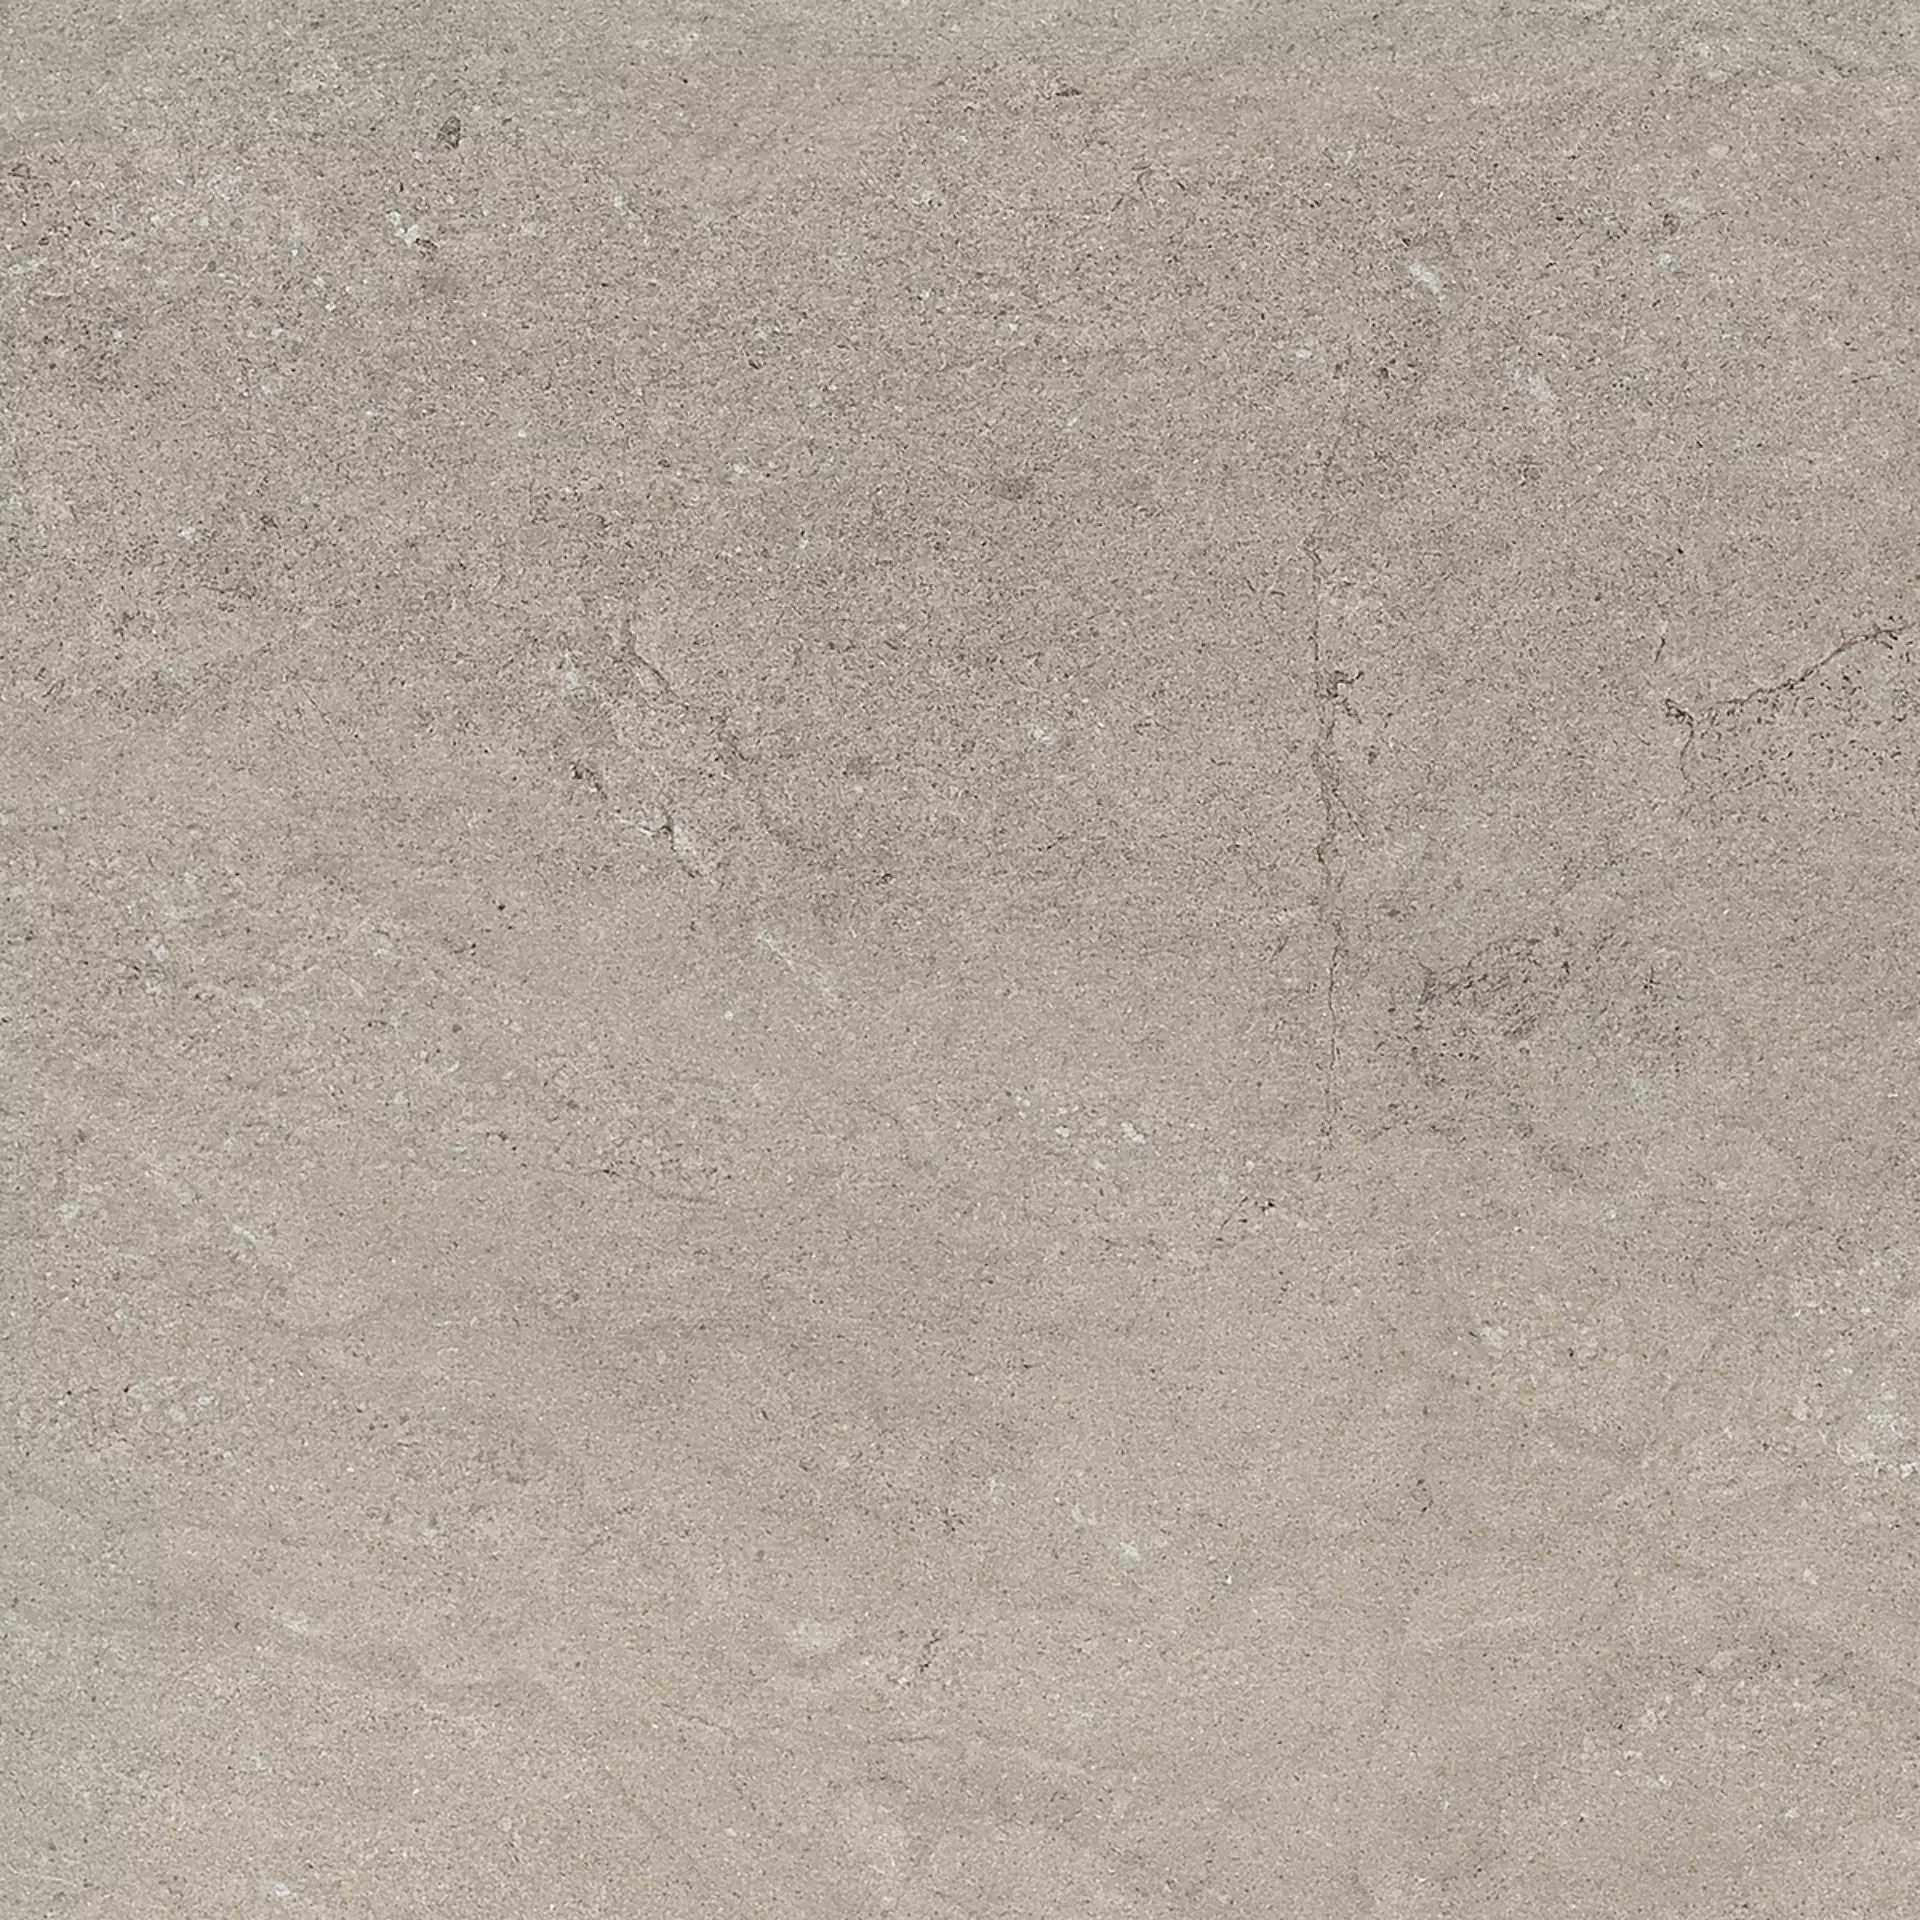 Gigacer Quarry Gravel Stone Matt 6QUAGRASTMAT60 60x60cm 6mm